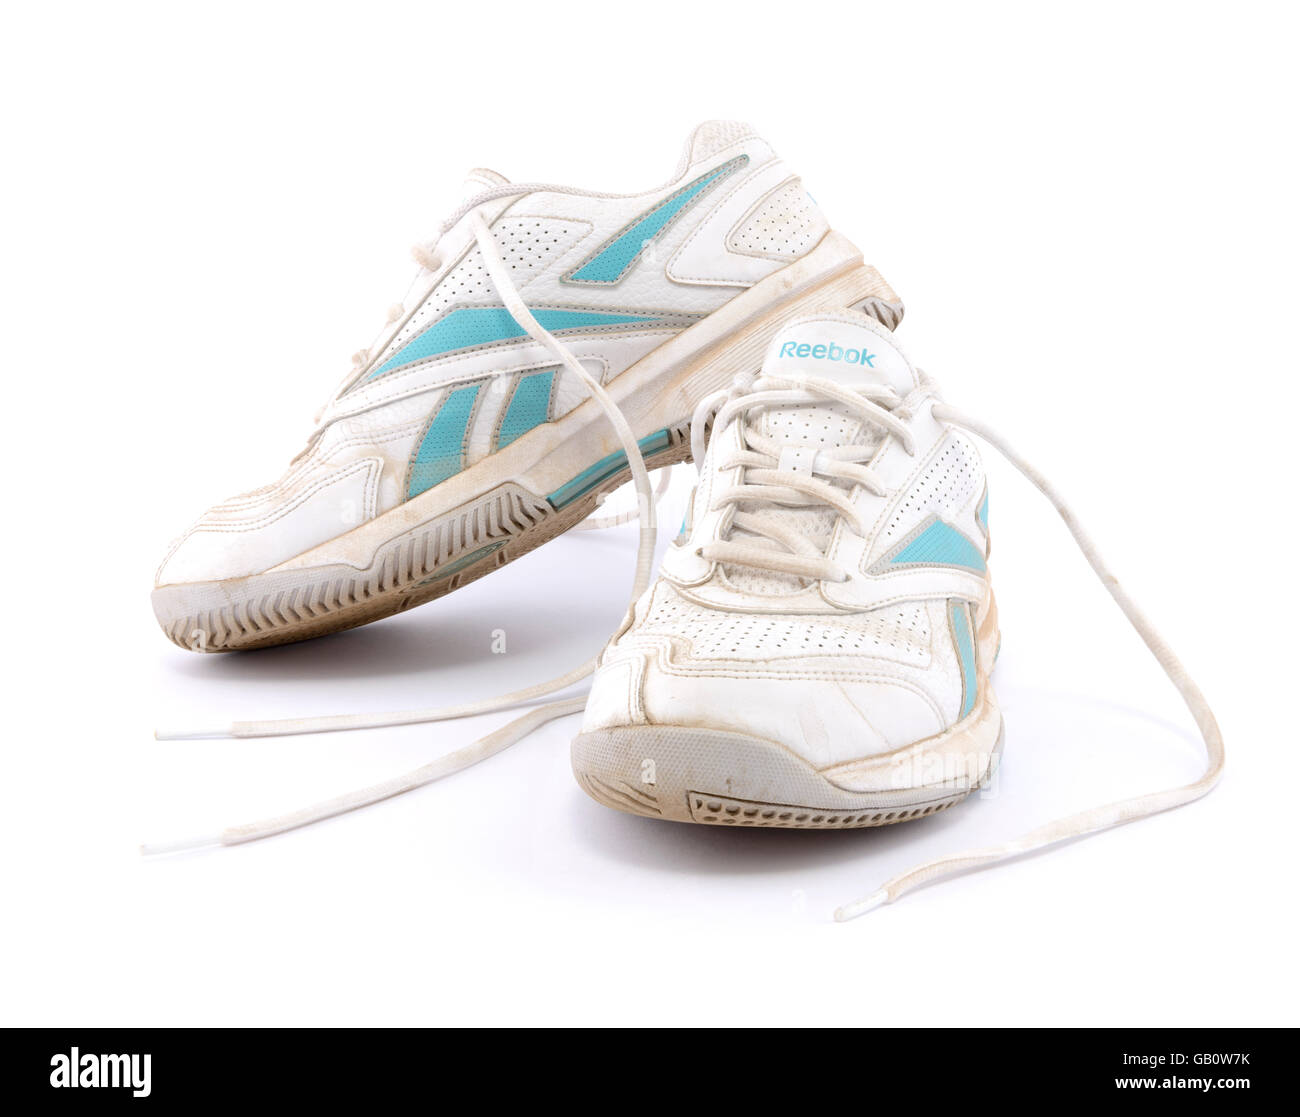 Reebok shoes fotografías e imágenes de - Alamy